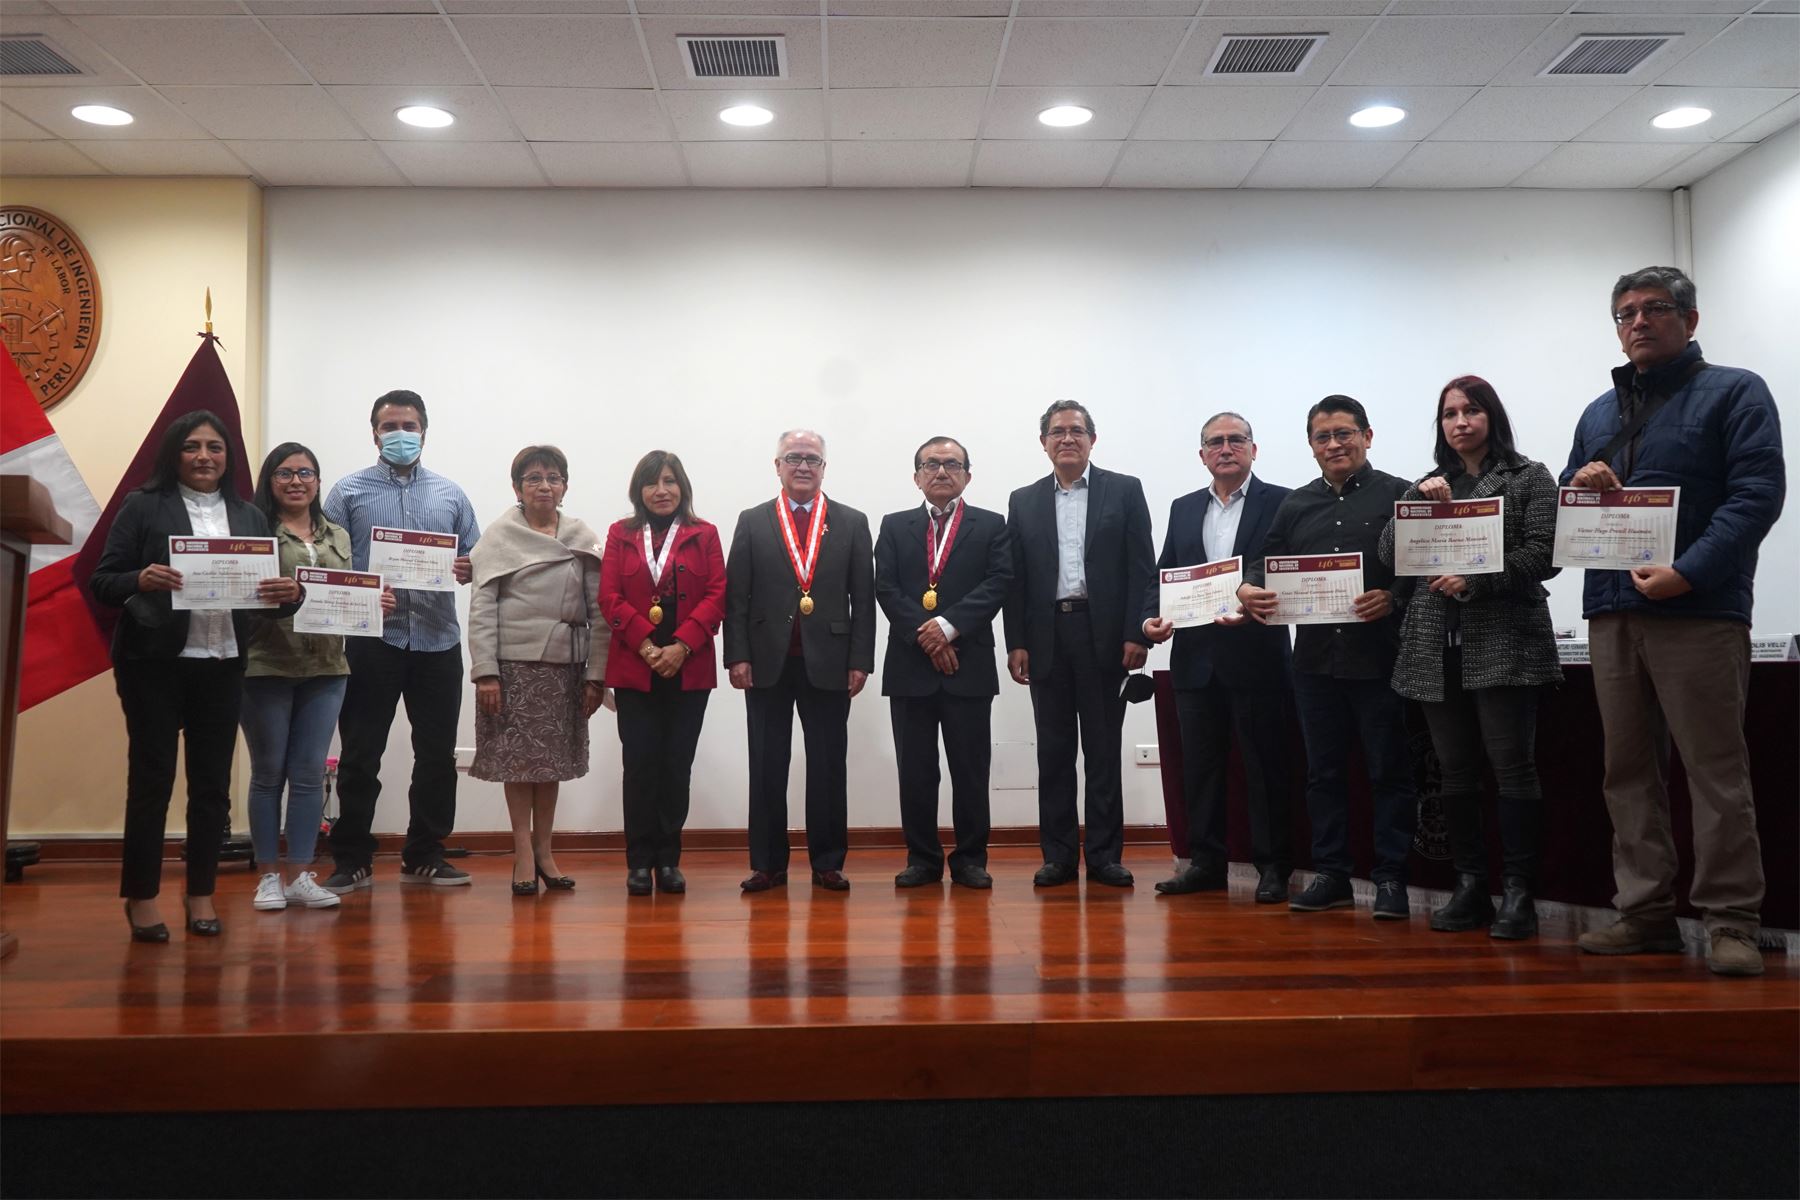 Ceremonia fue presidida por el rector de la UNI, el doctor Alfonso López Chau Nava, quien felicitó a todos los investigadores por sus logros.